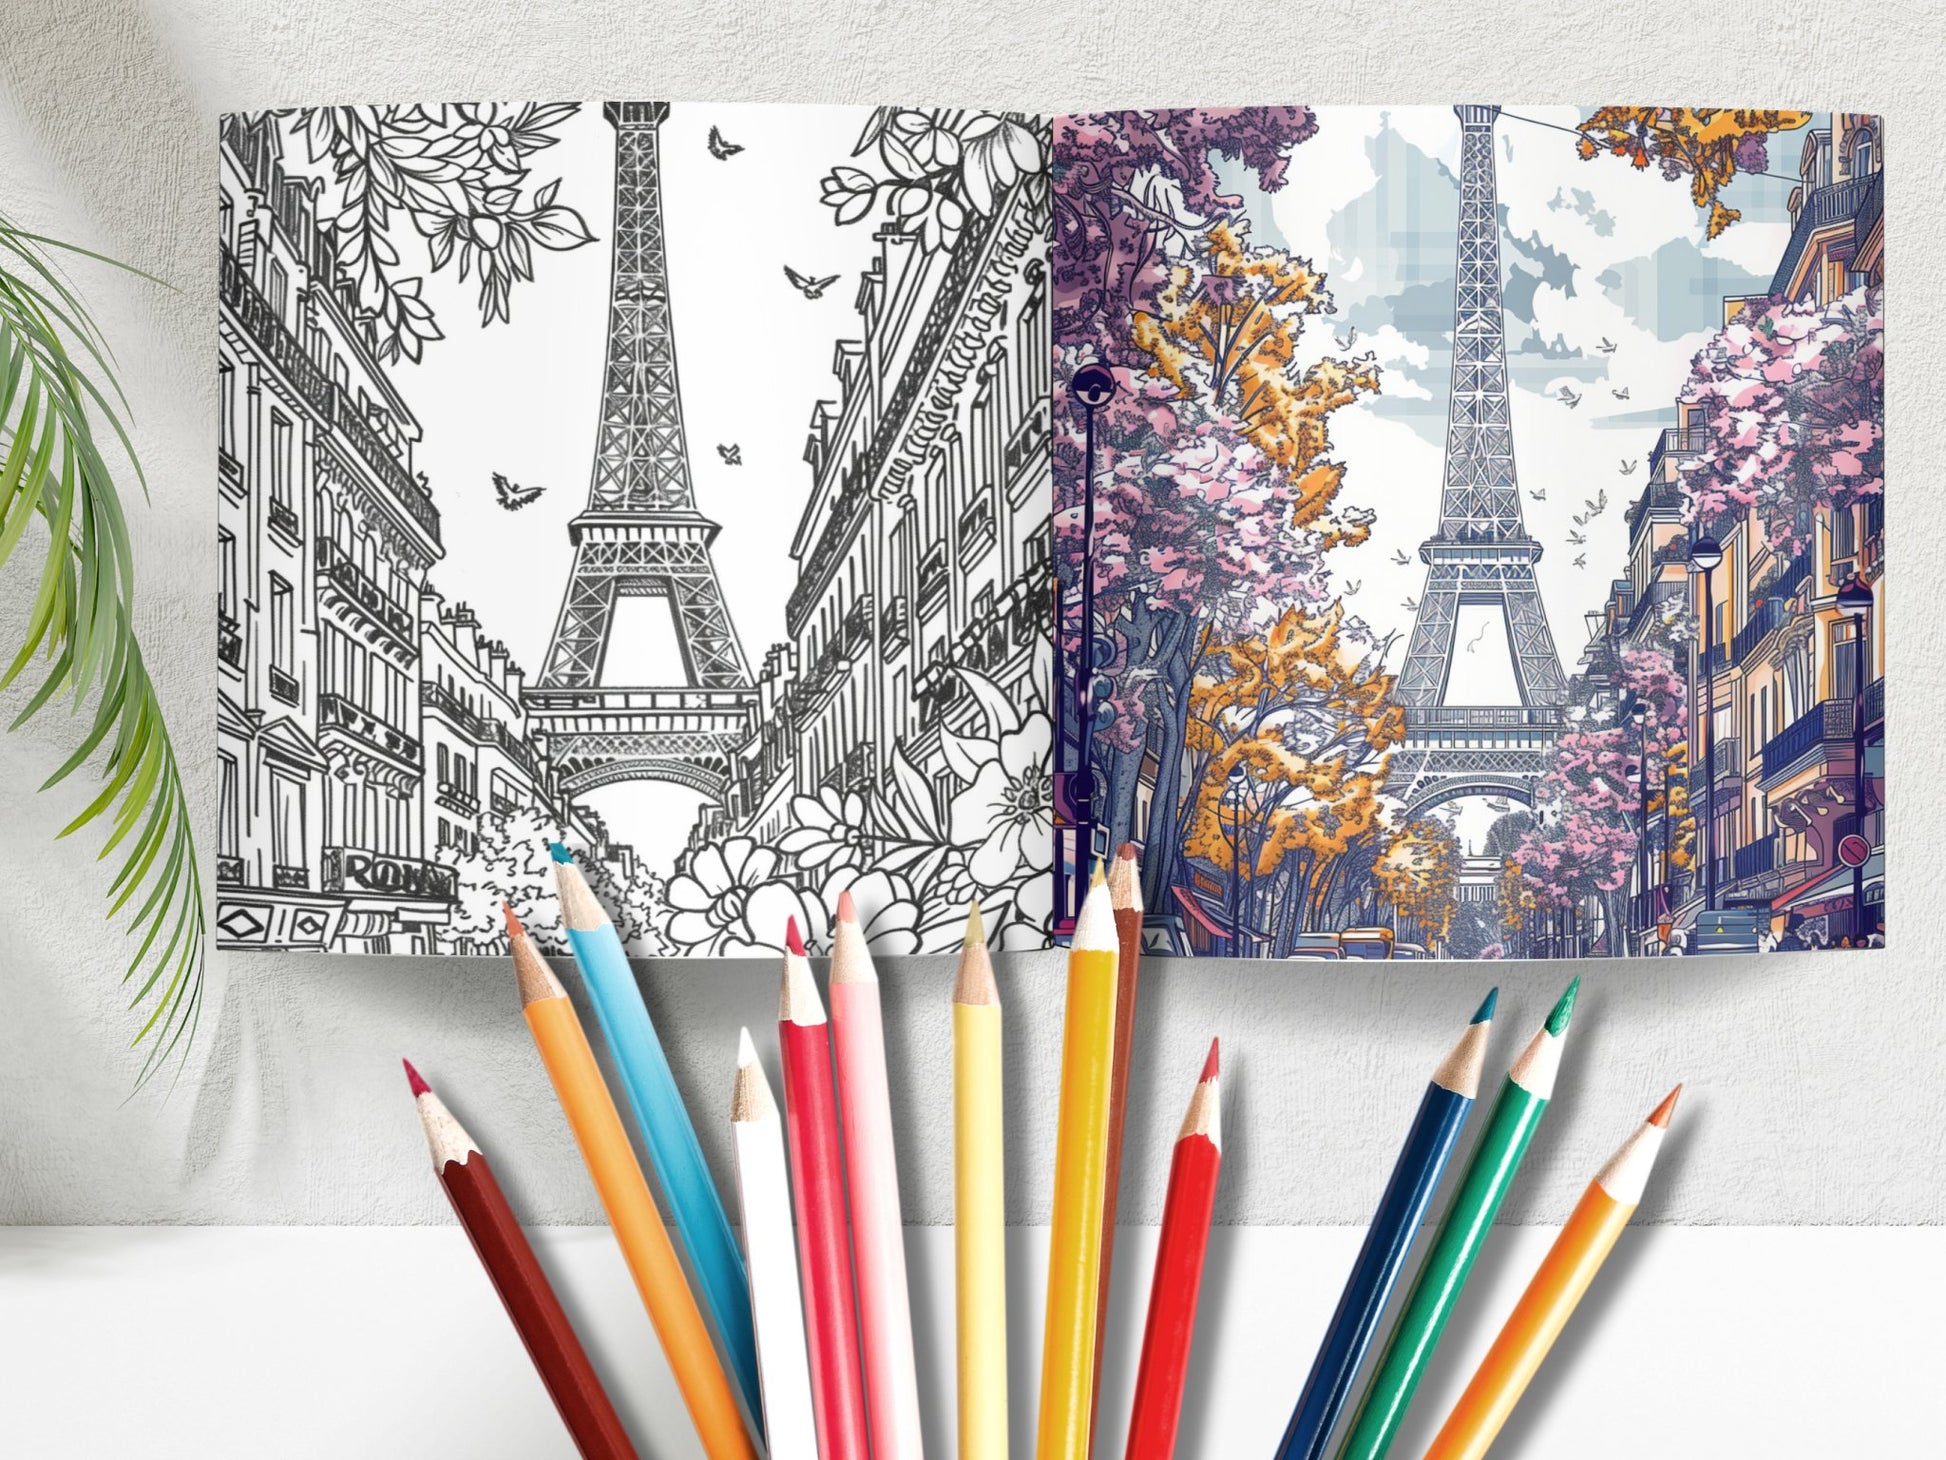 35 Unique Paris Coloring Pages - My Coloring Zone